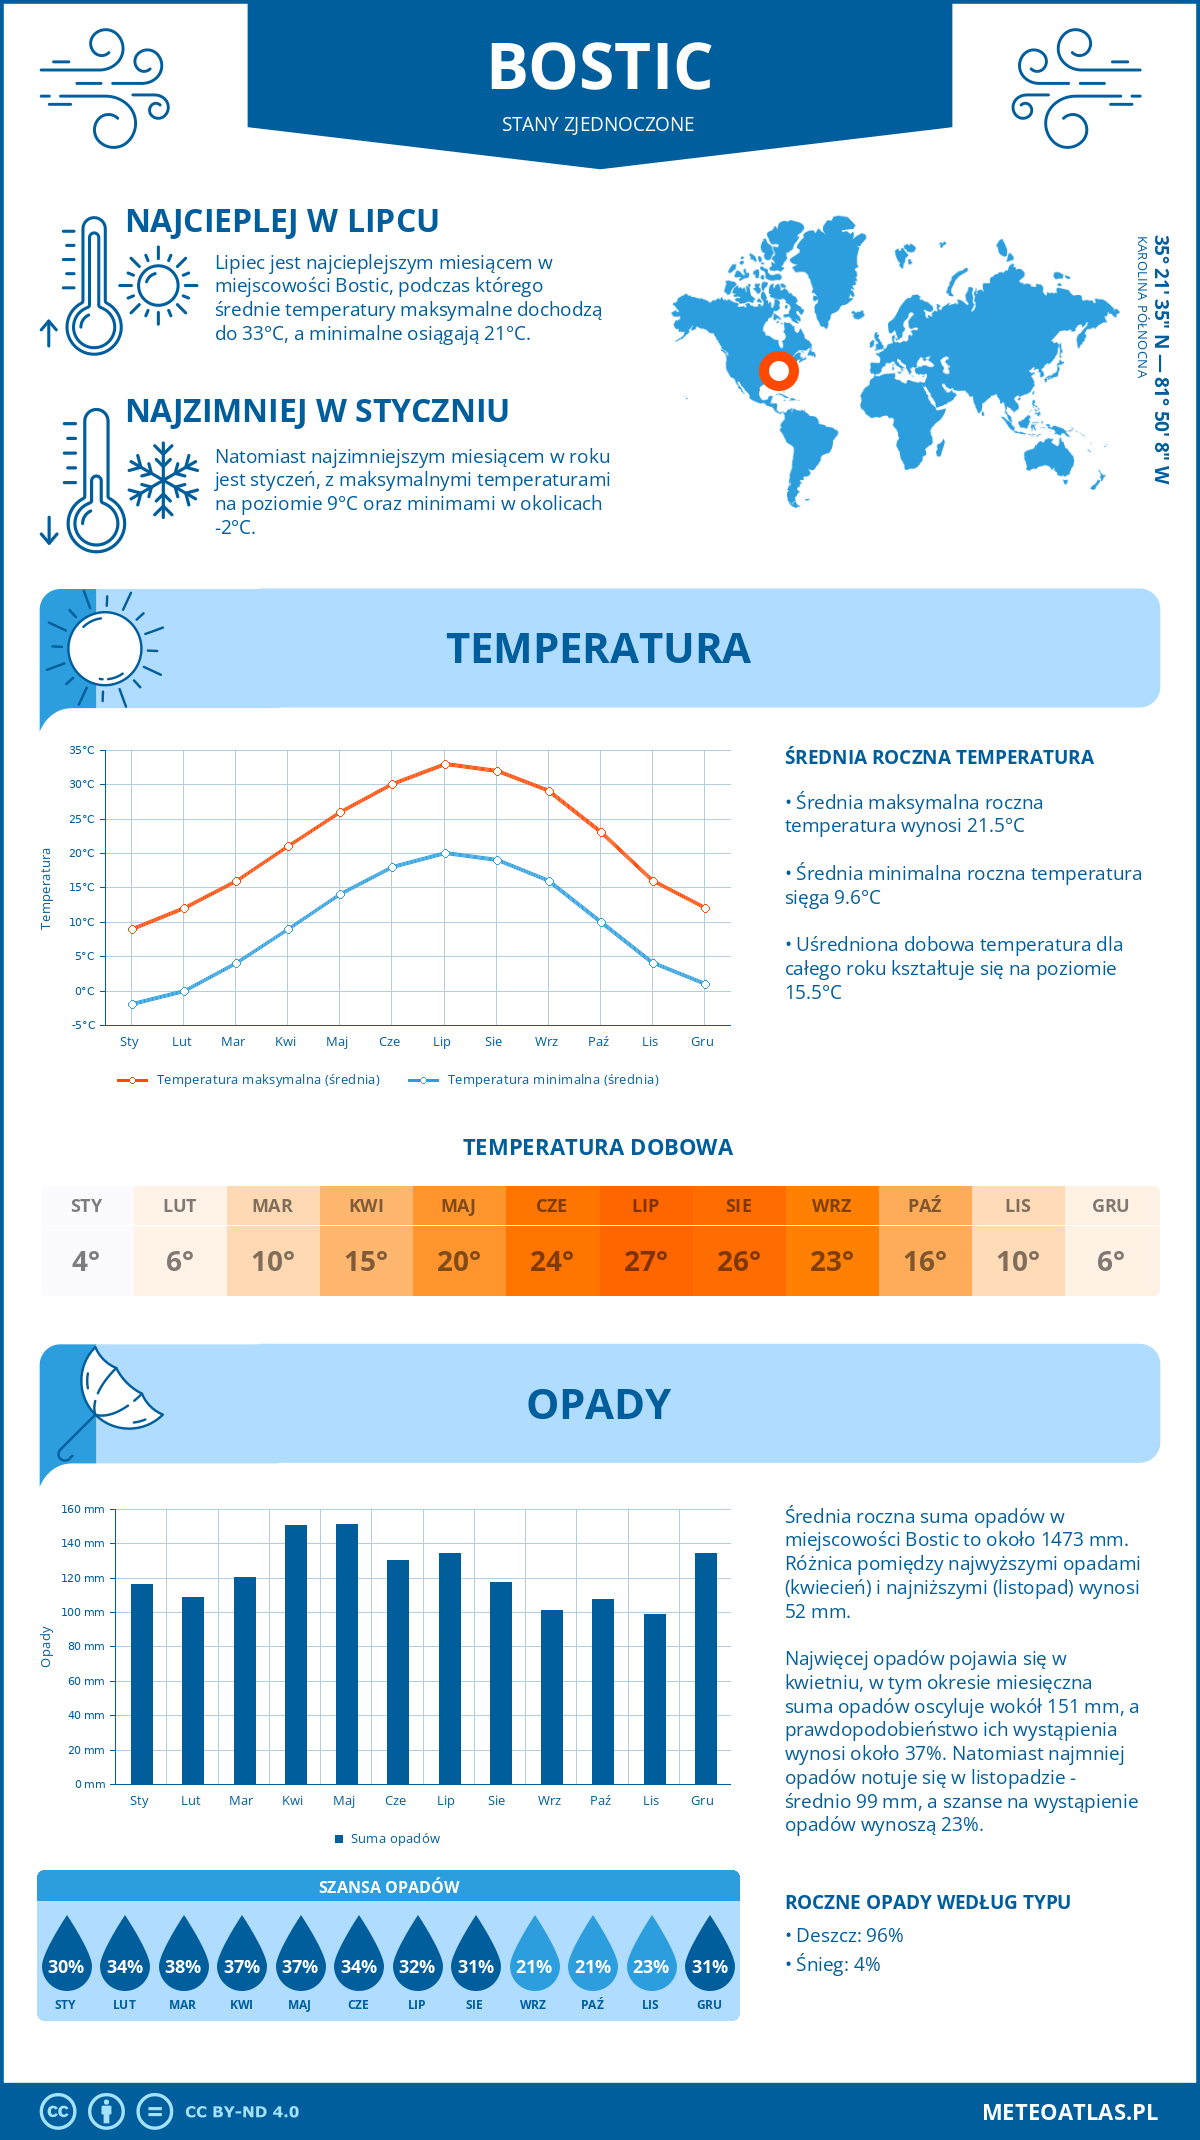 Pogoda Bostic (Stany Zjednoczone). Temperatura oraz opady.